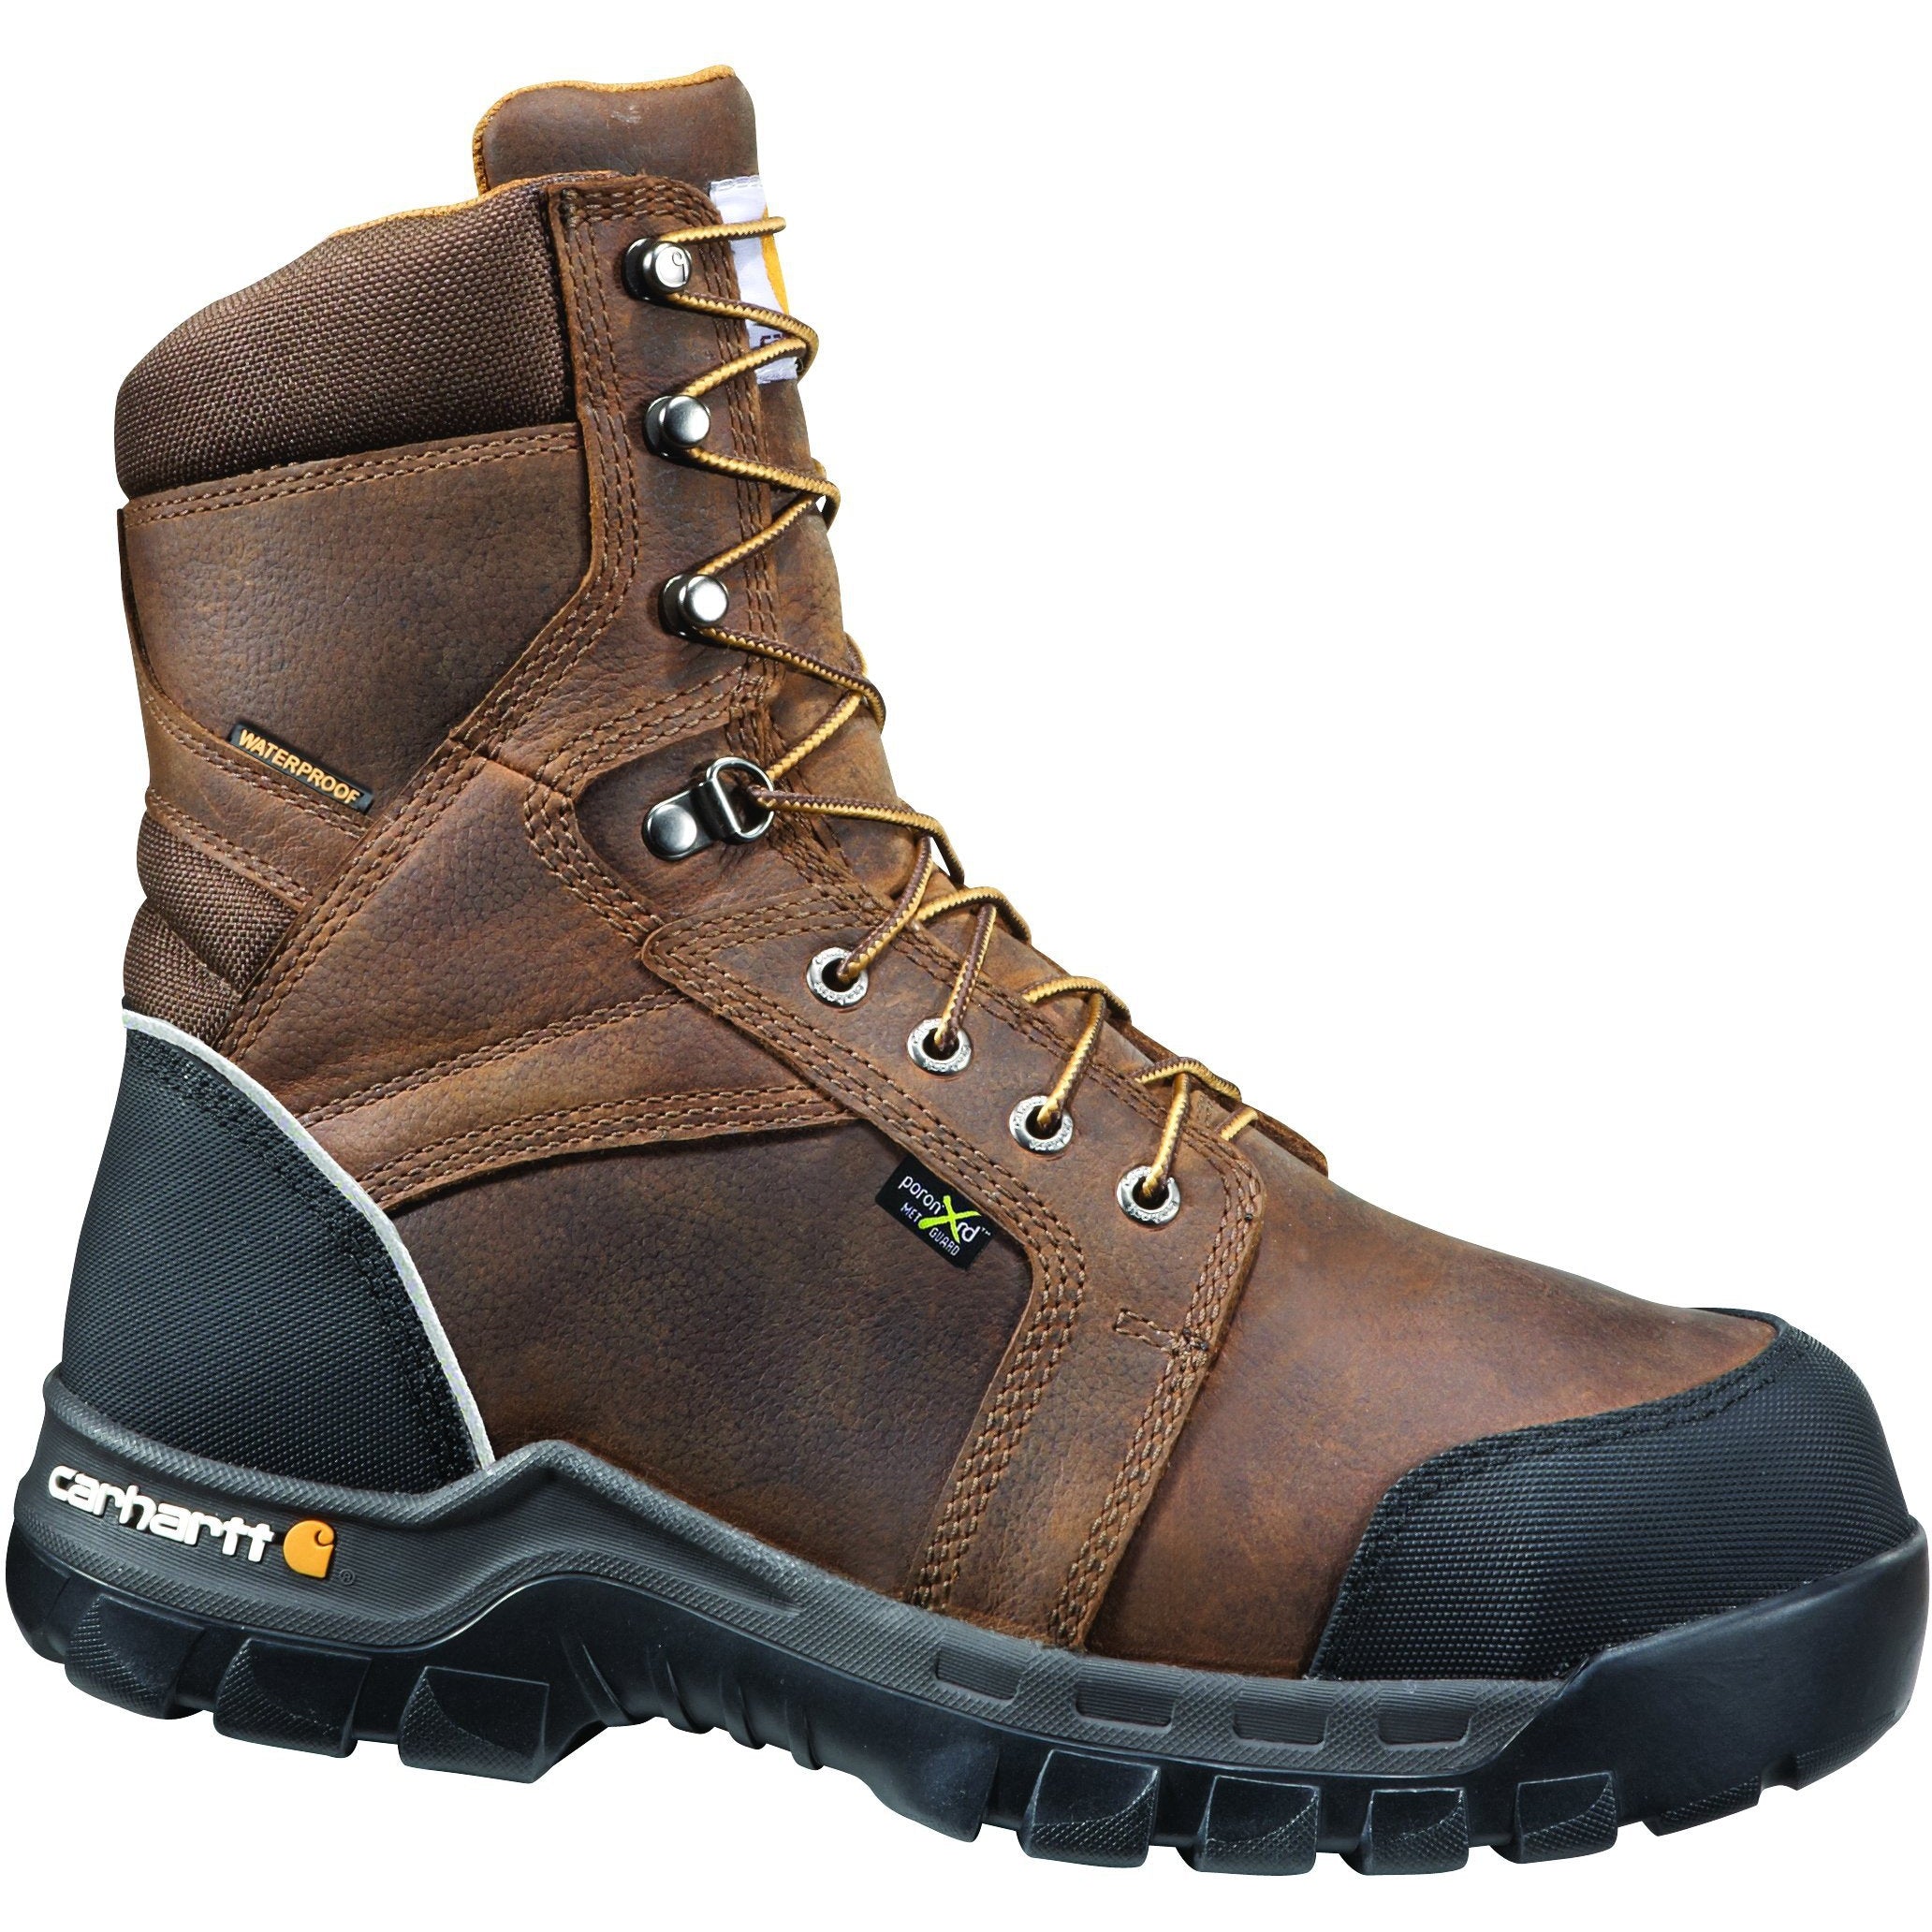 Carhartt Men's 8" Comp Toe Metguard WP Work Boot Brown CMF8720 8 / Medium / Brown - Overlook Boots